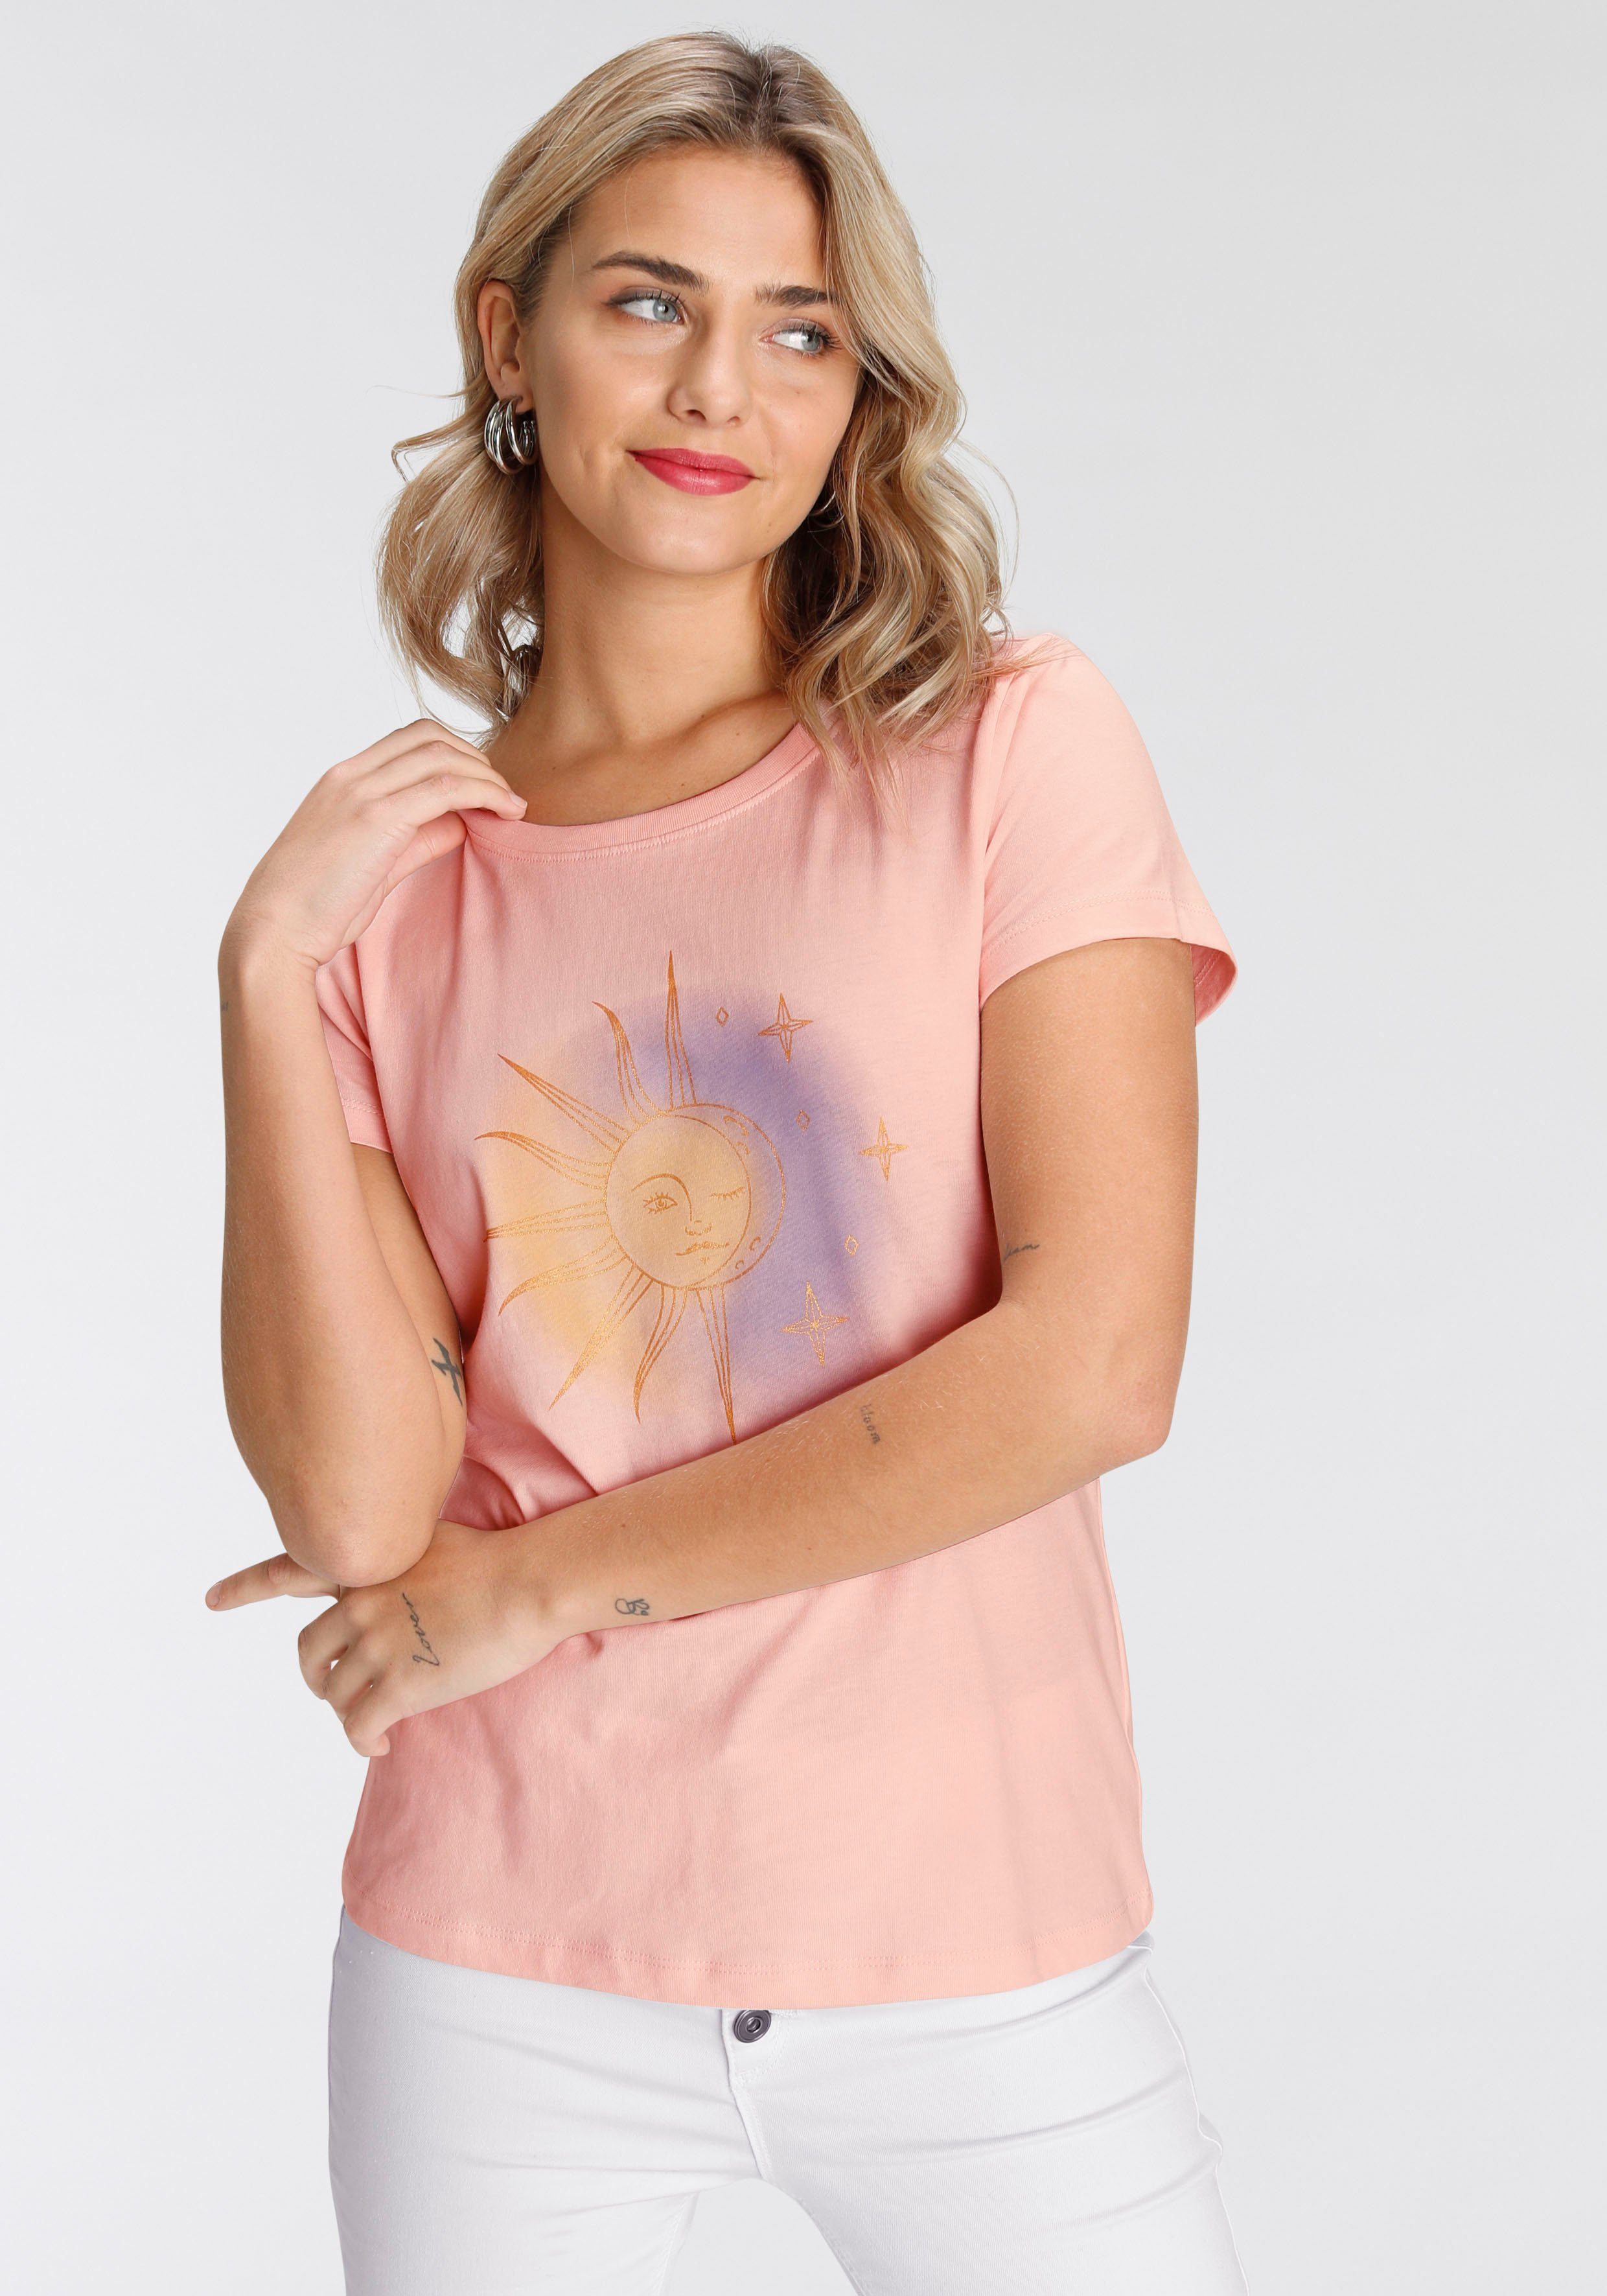 Designs rosa AJC modischen in verschiedenen Print-Shirt